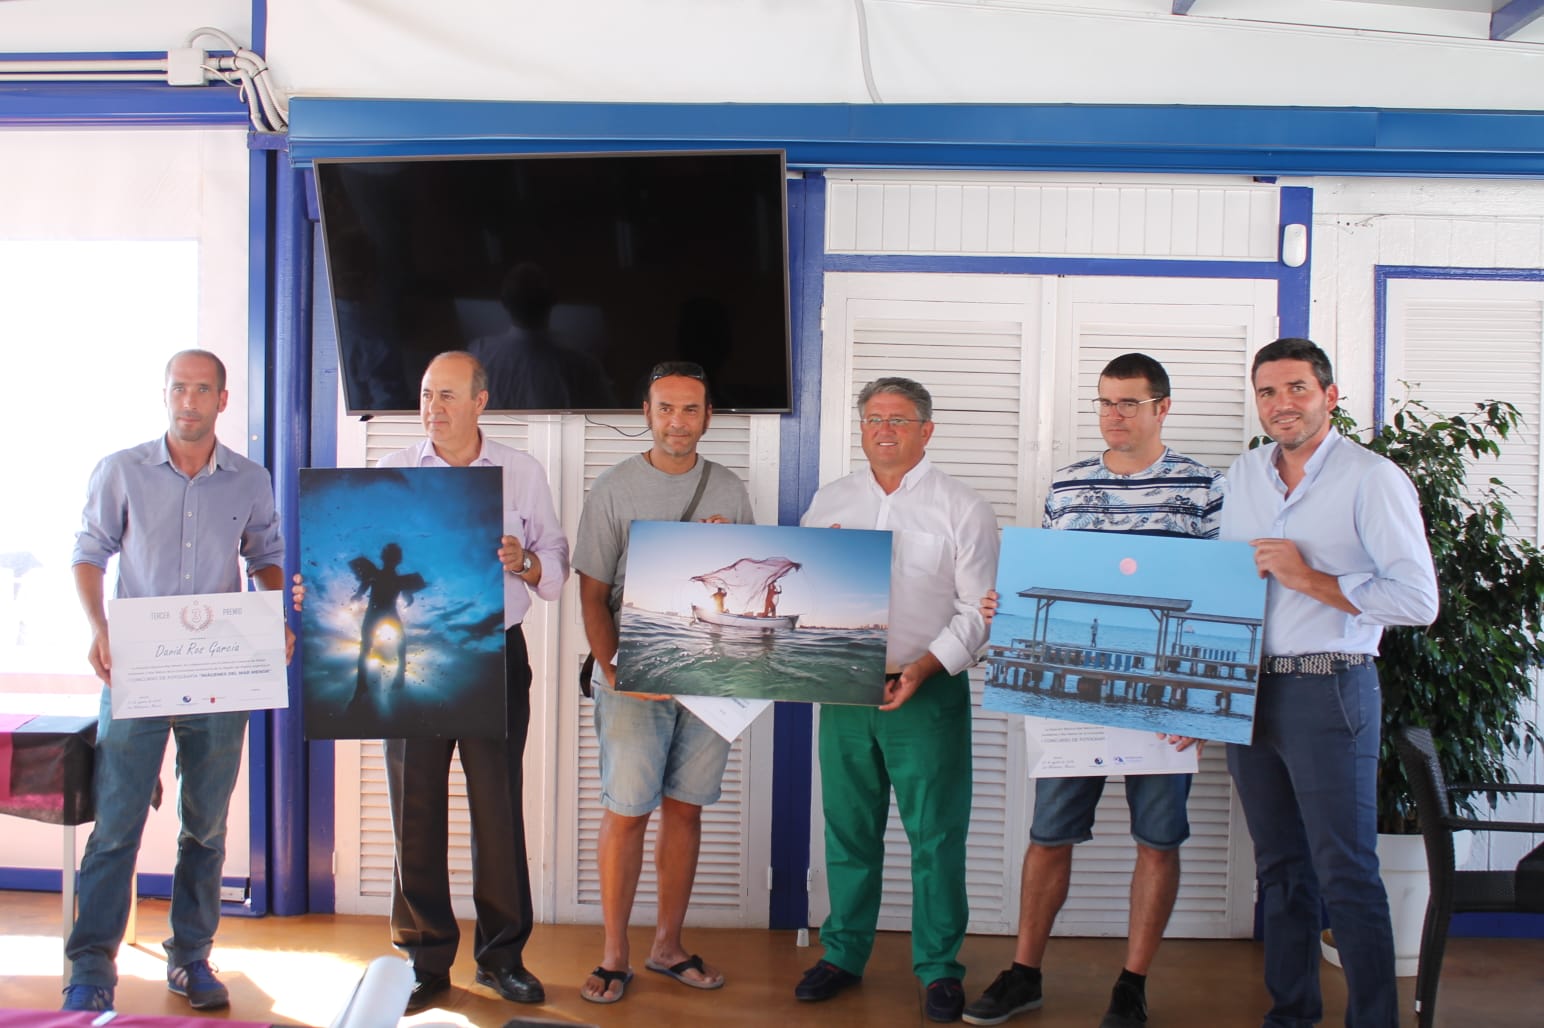 Entrega de los premios del concurso de fotografía organizado por la Estación Náutica del Mar Menor con la Comunidad Autónoma. Imagen: CARM